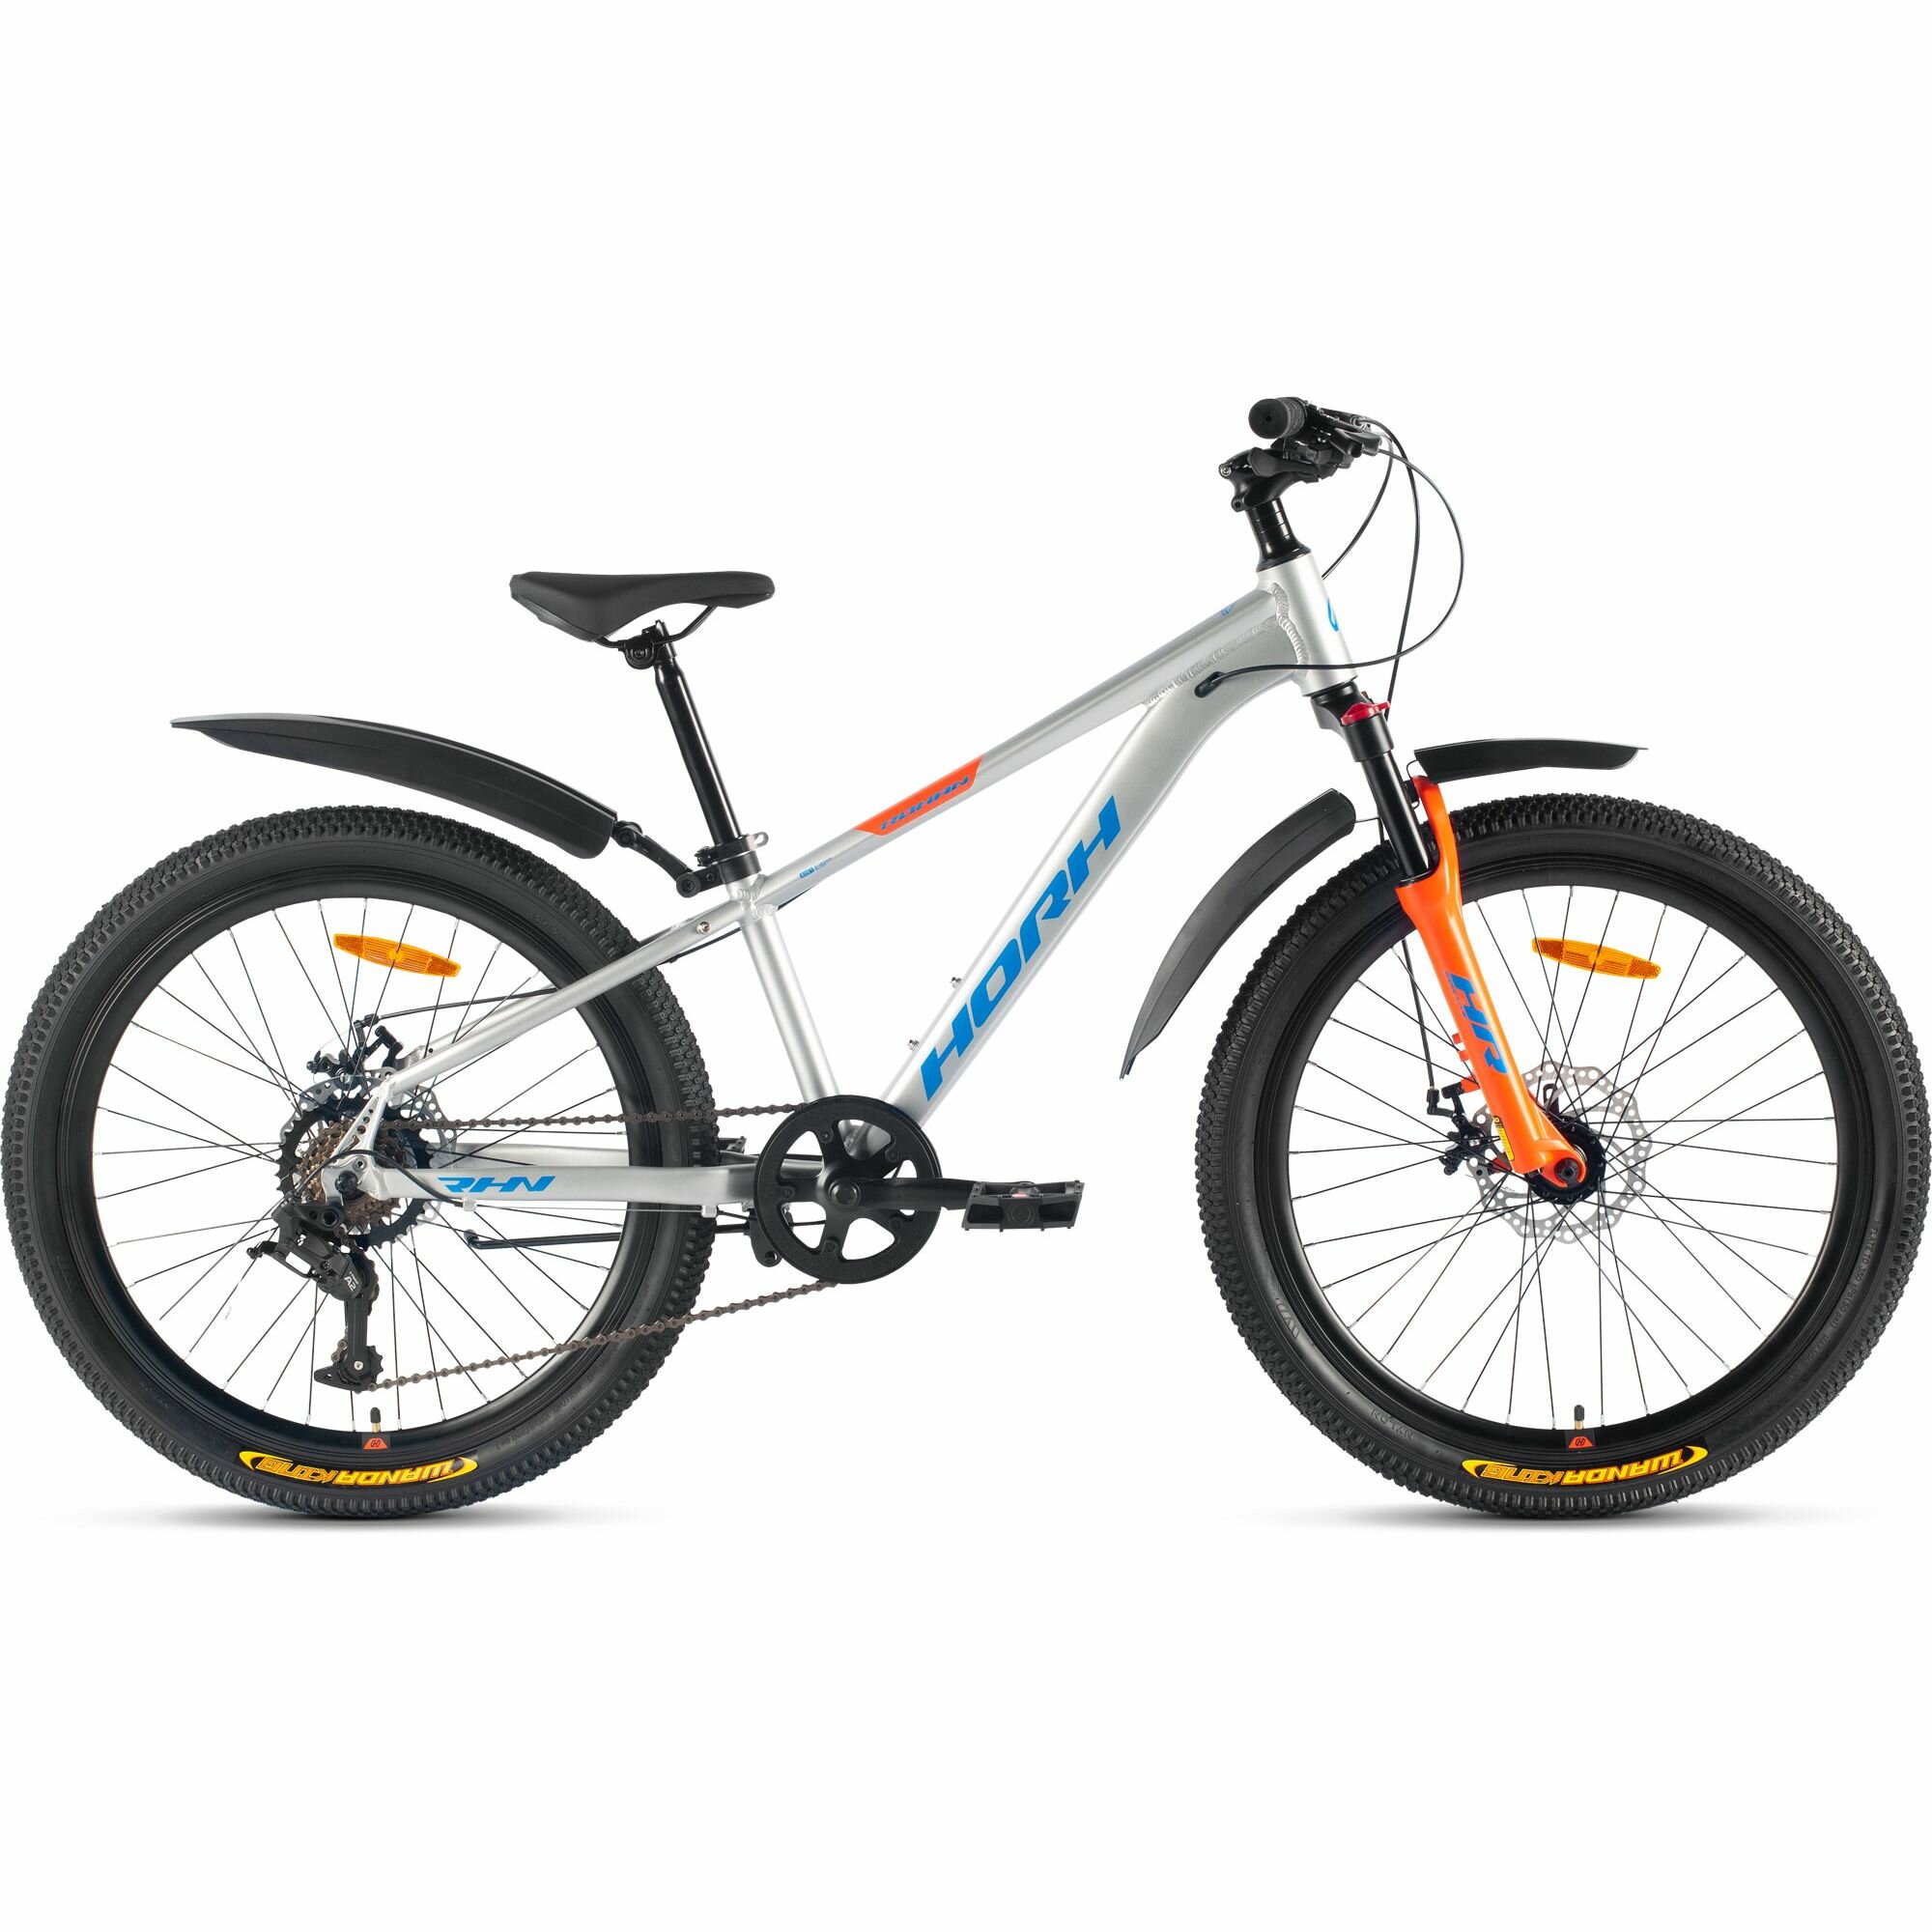 Велосипед горный HORH ROHAN RMD 24" (2024), хардтейл, детский, для мальчиков, алюминиевая рама, 7 скоростей, дисковые механические тормоза, цвет Grey-Blue-Orange, серый/синий/оранжевый цвет, размер рамы 12", для роста 130-145 см